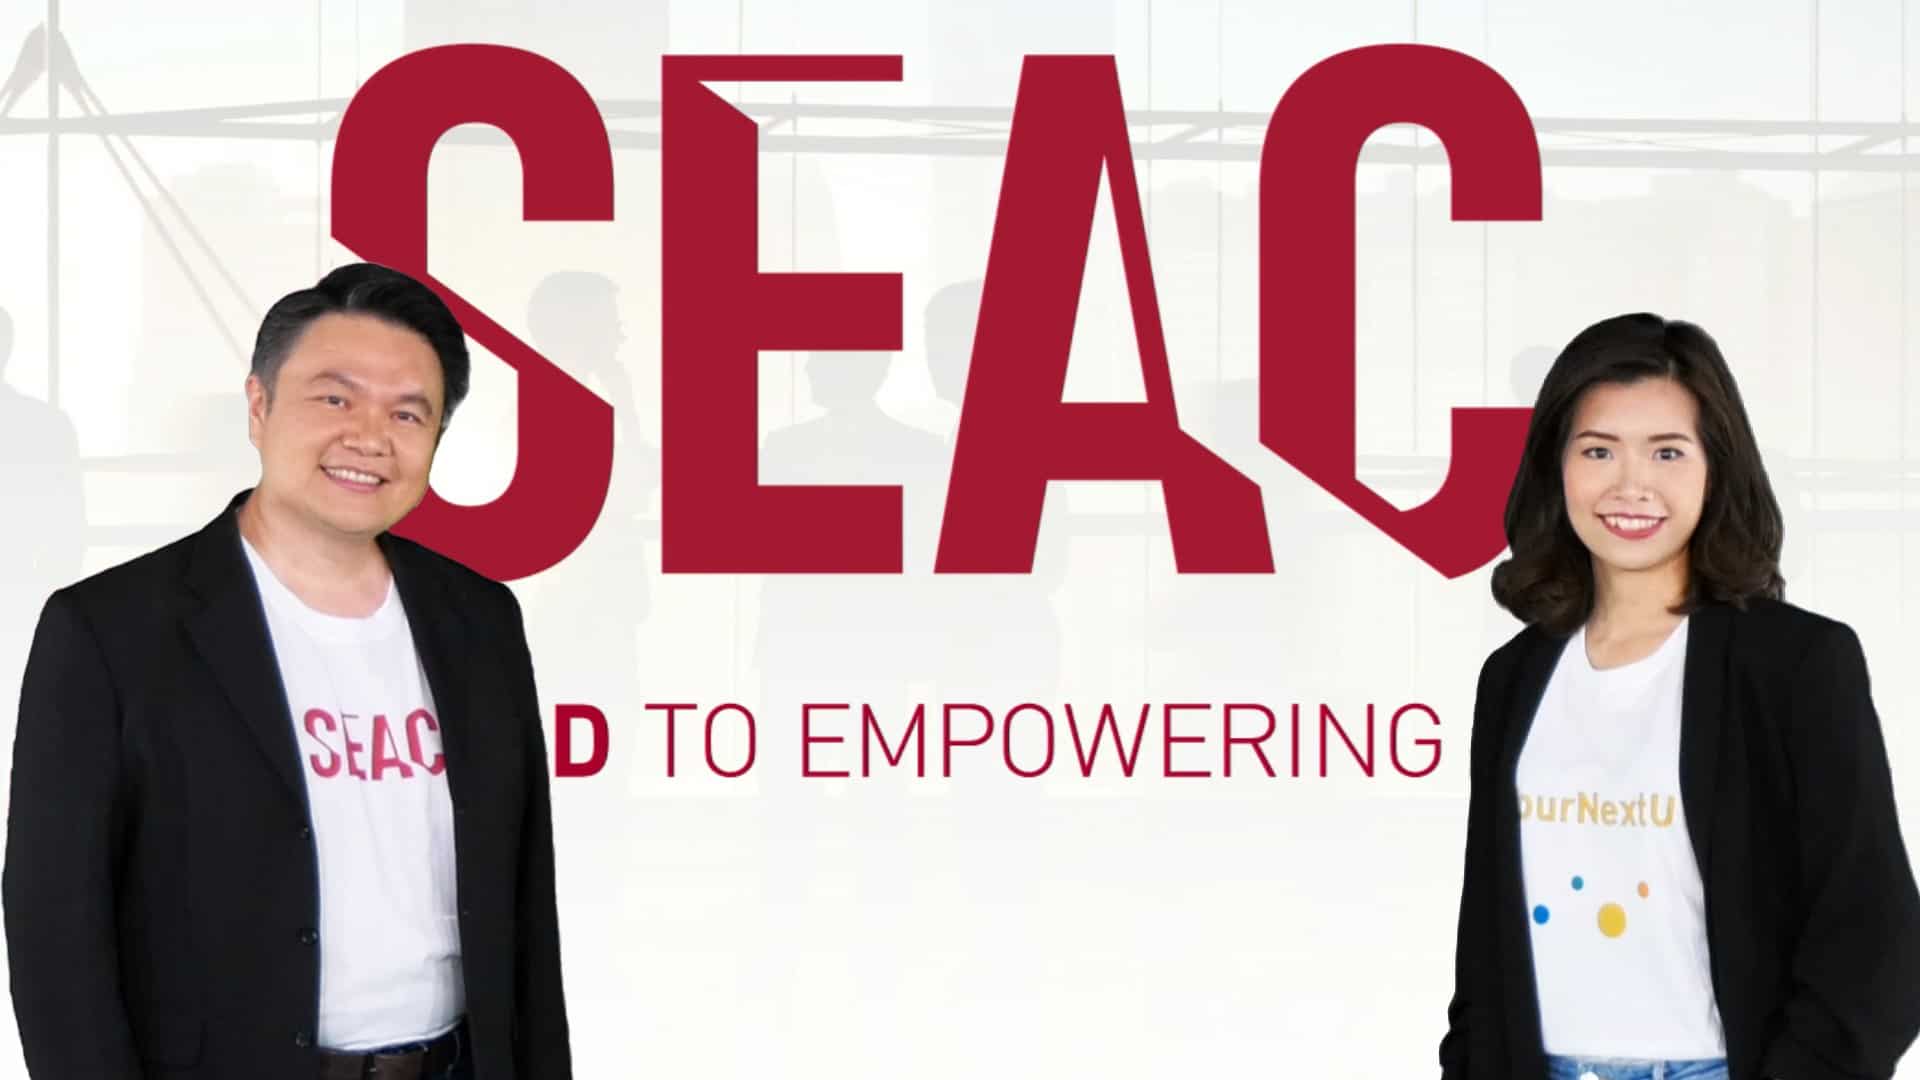 SEAC (ซีแอ็ค) กรุยแผนธุรกิจปี 65 กับเป้าหมายอัพสกิลคนไทย 1 ล้านคนใน 3 ปี 